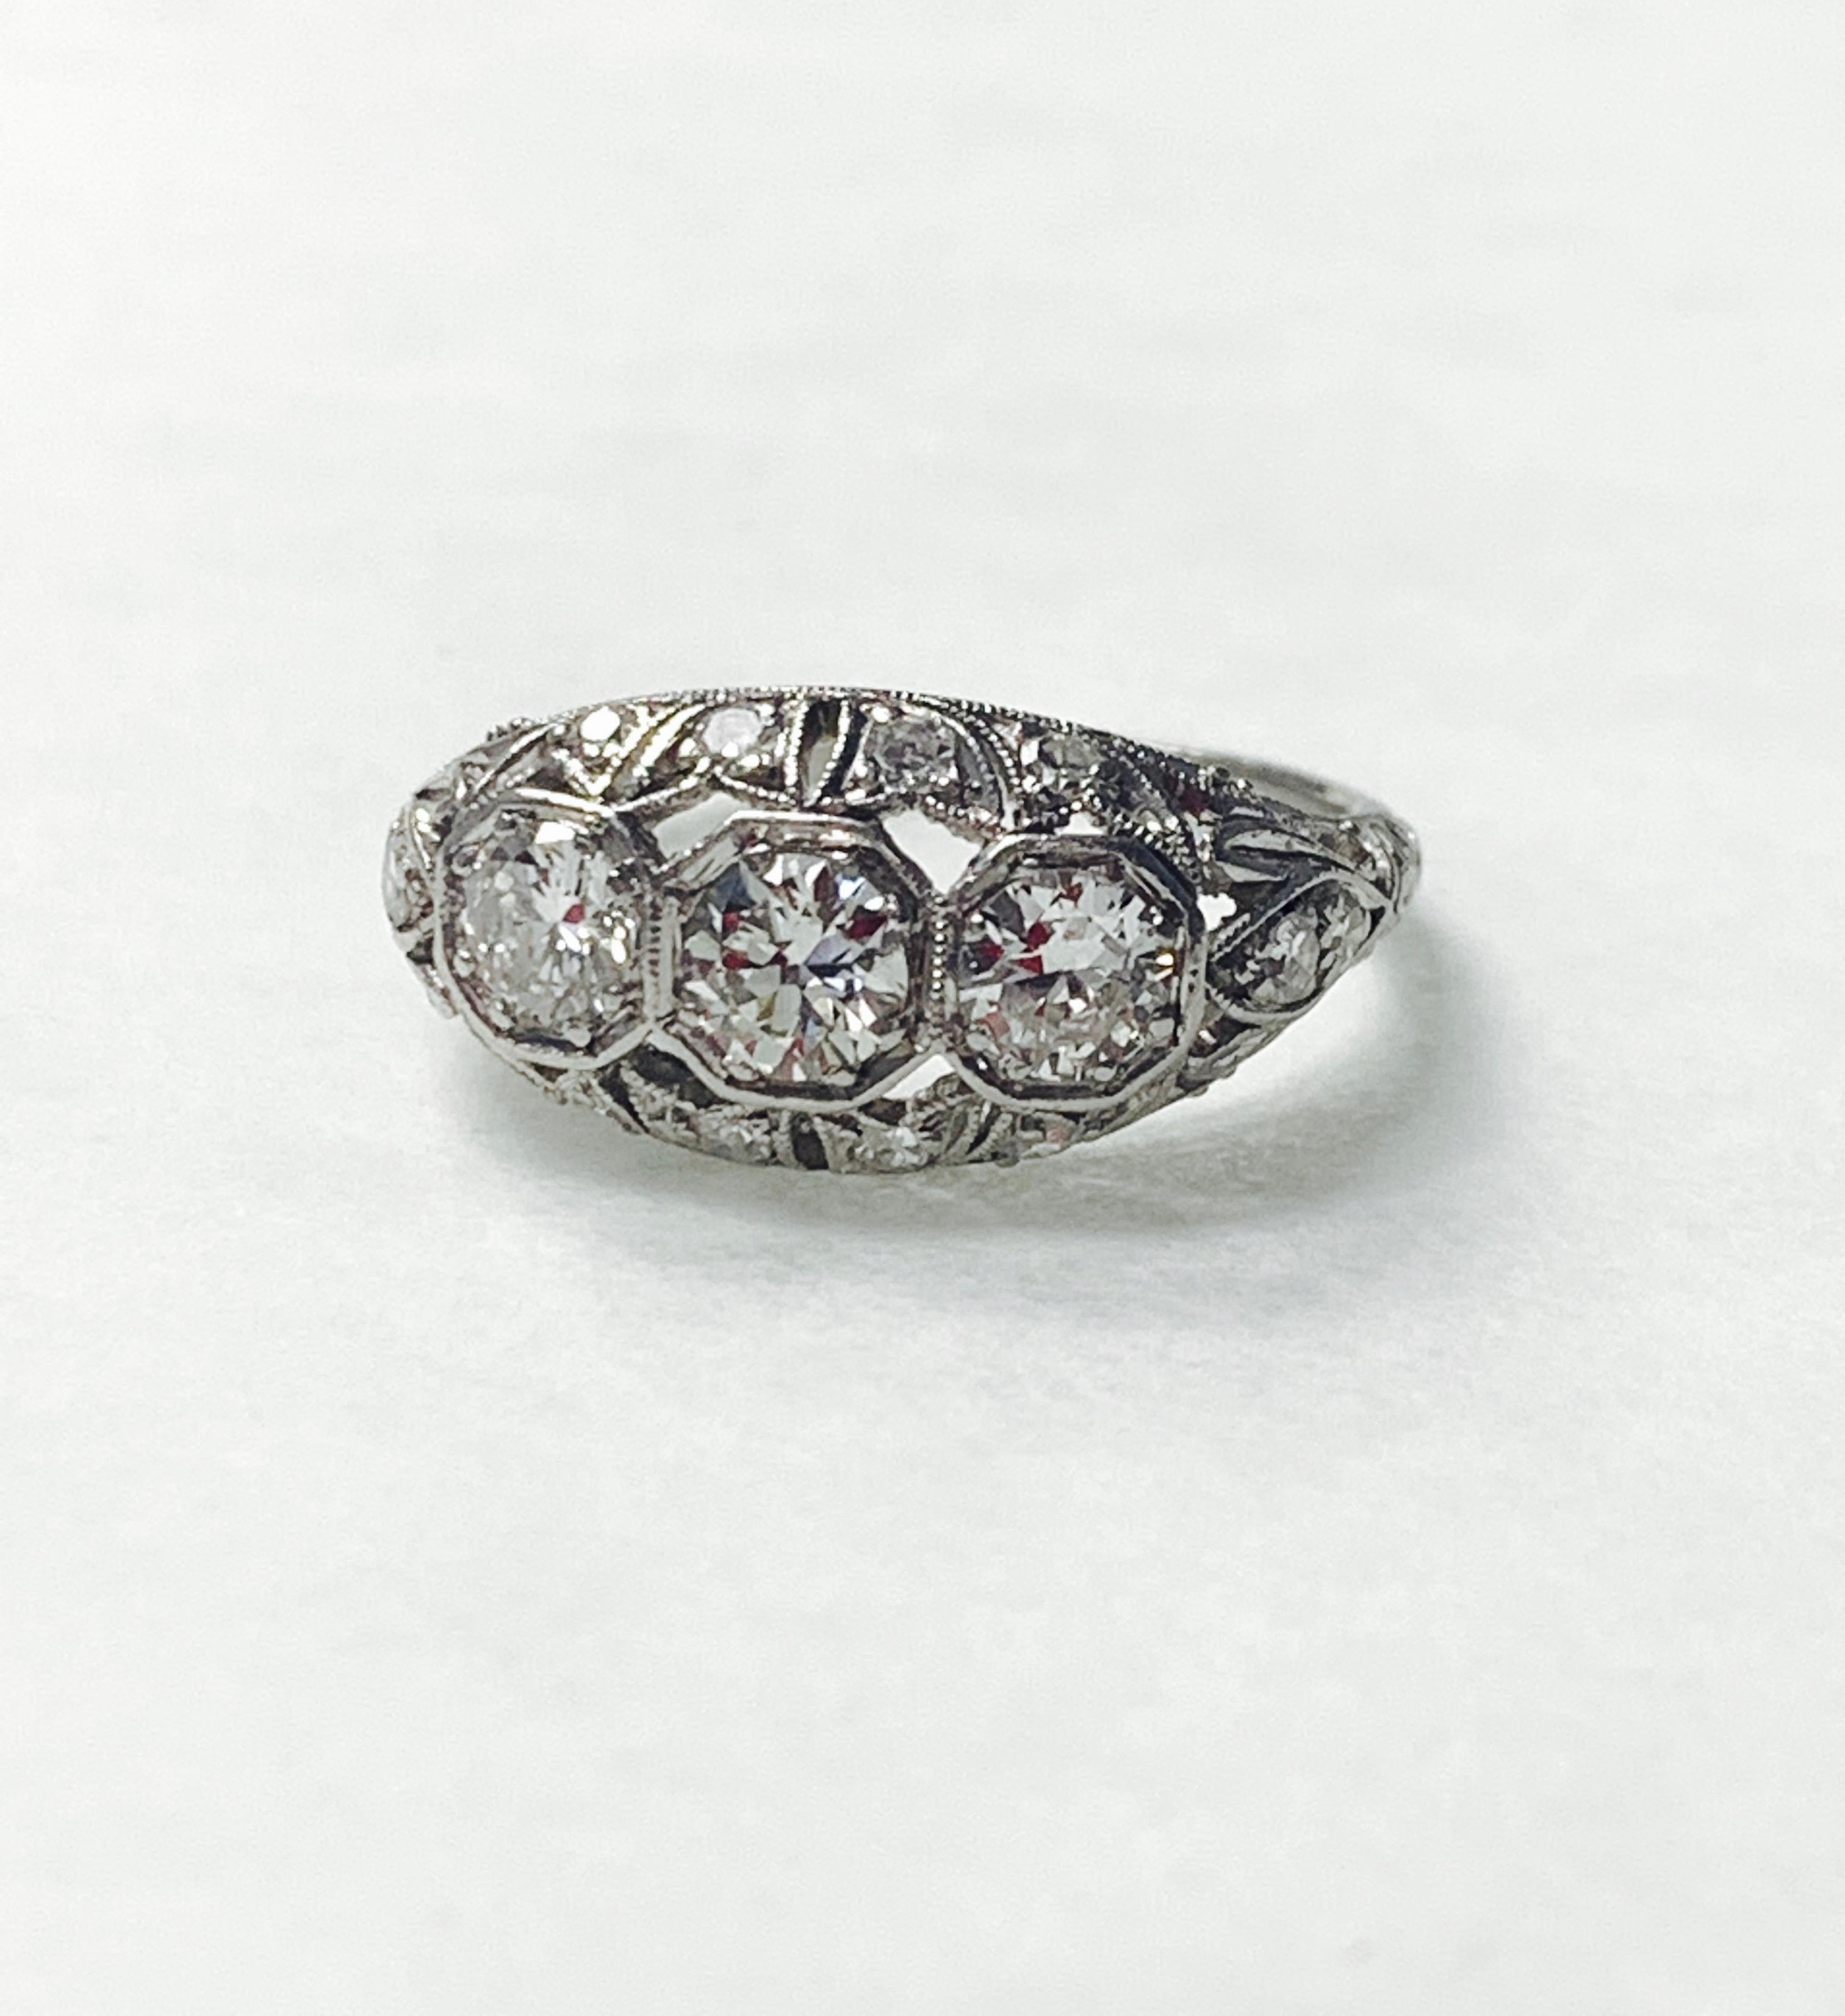 1920 Antique Three-Stone Old European Cut Diamond Ring in Platinum For Sale 1